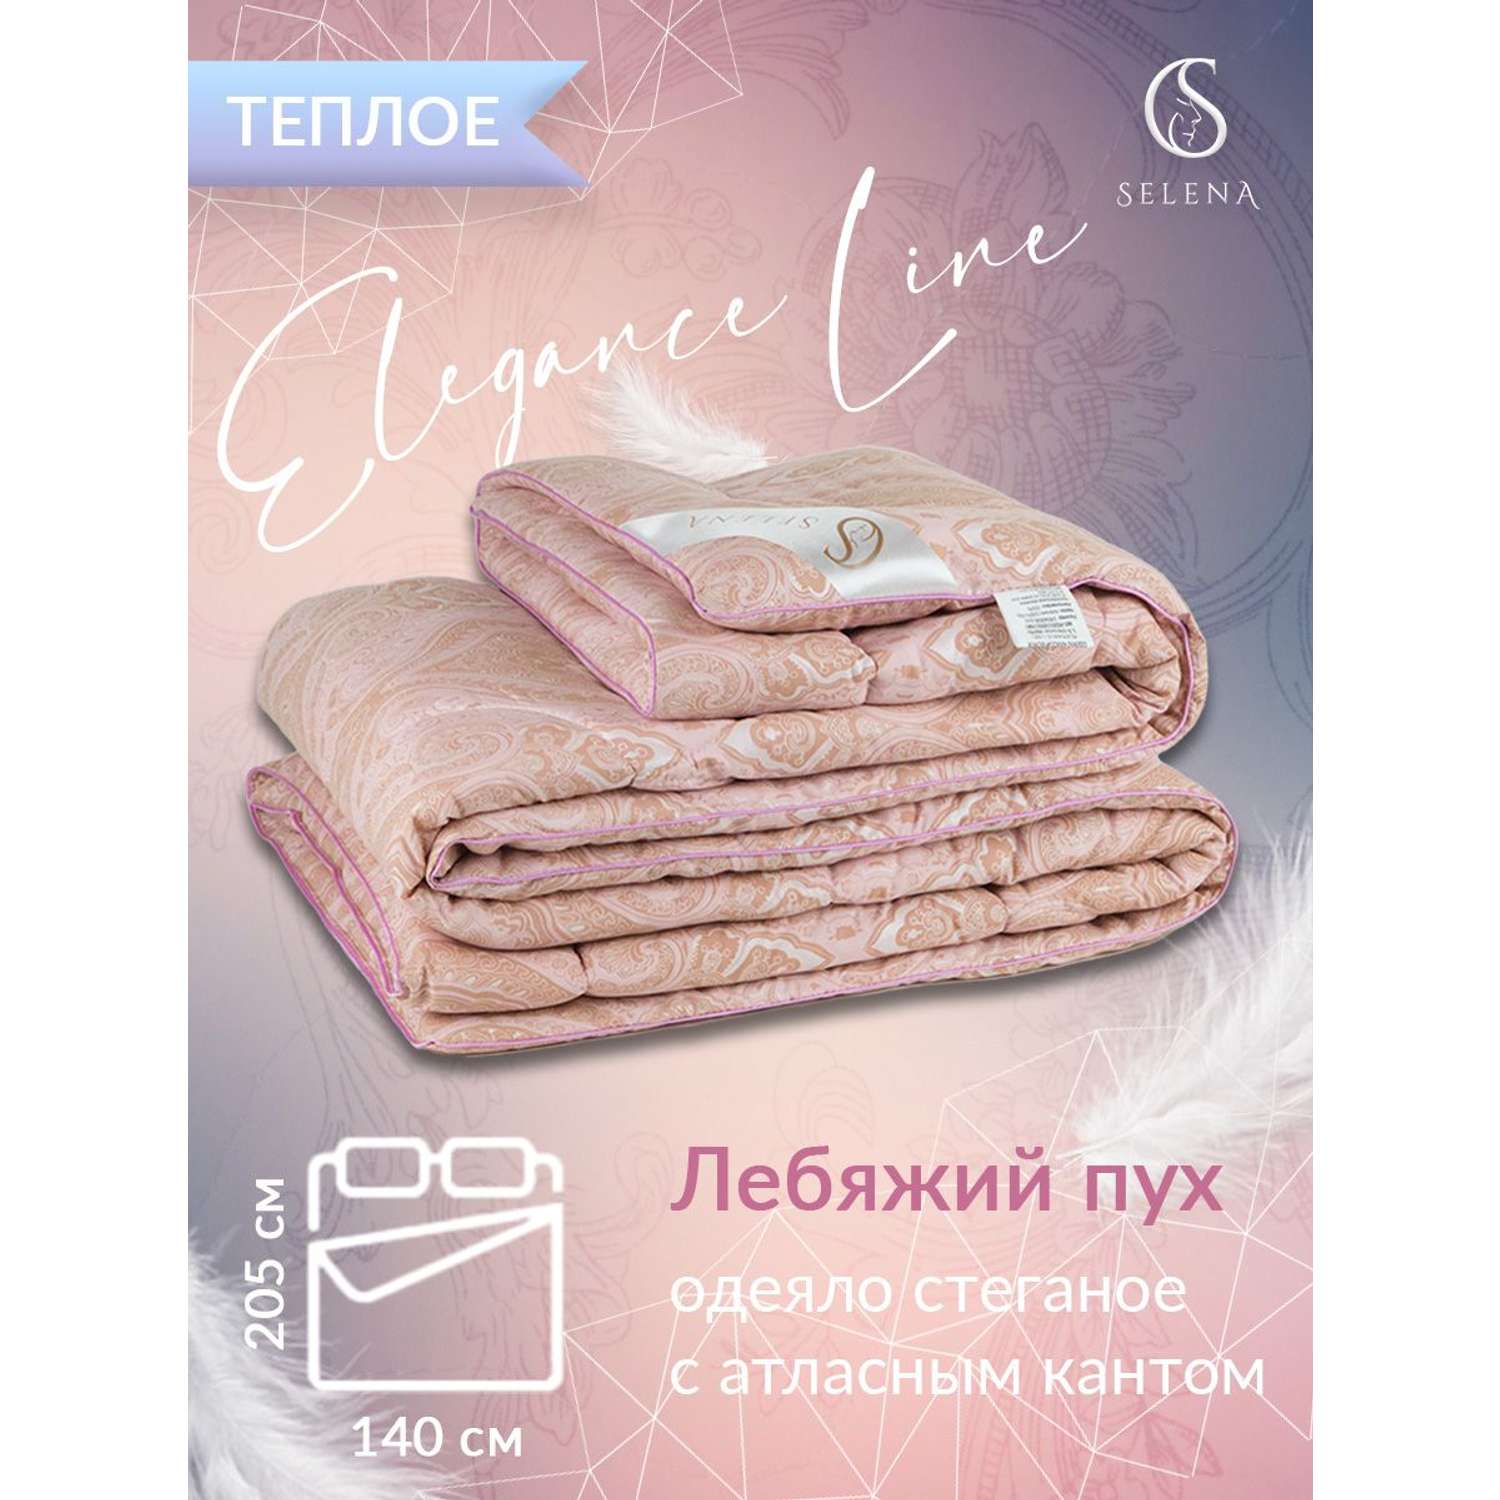 Одеяло SELENA Elegance Line КЕТО 140x205 см всесезонное поплекс 100% наполнитель полиэфирный Лебяжий пух - фото 2